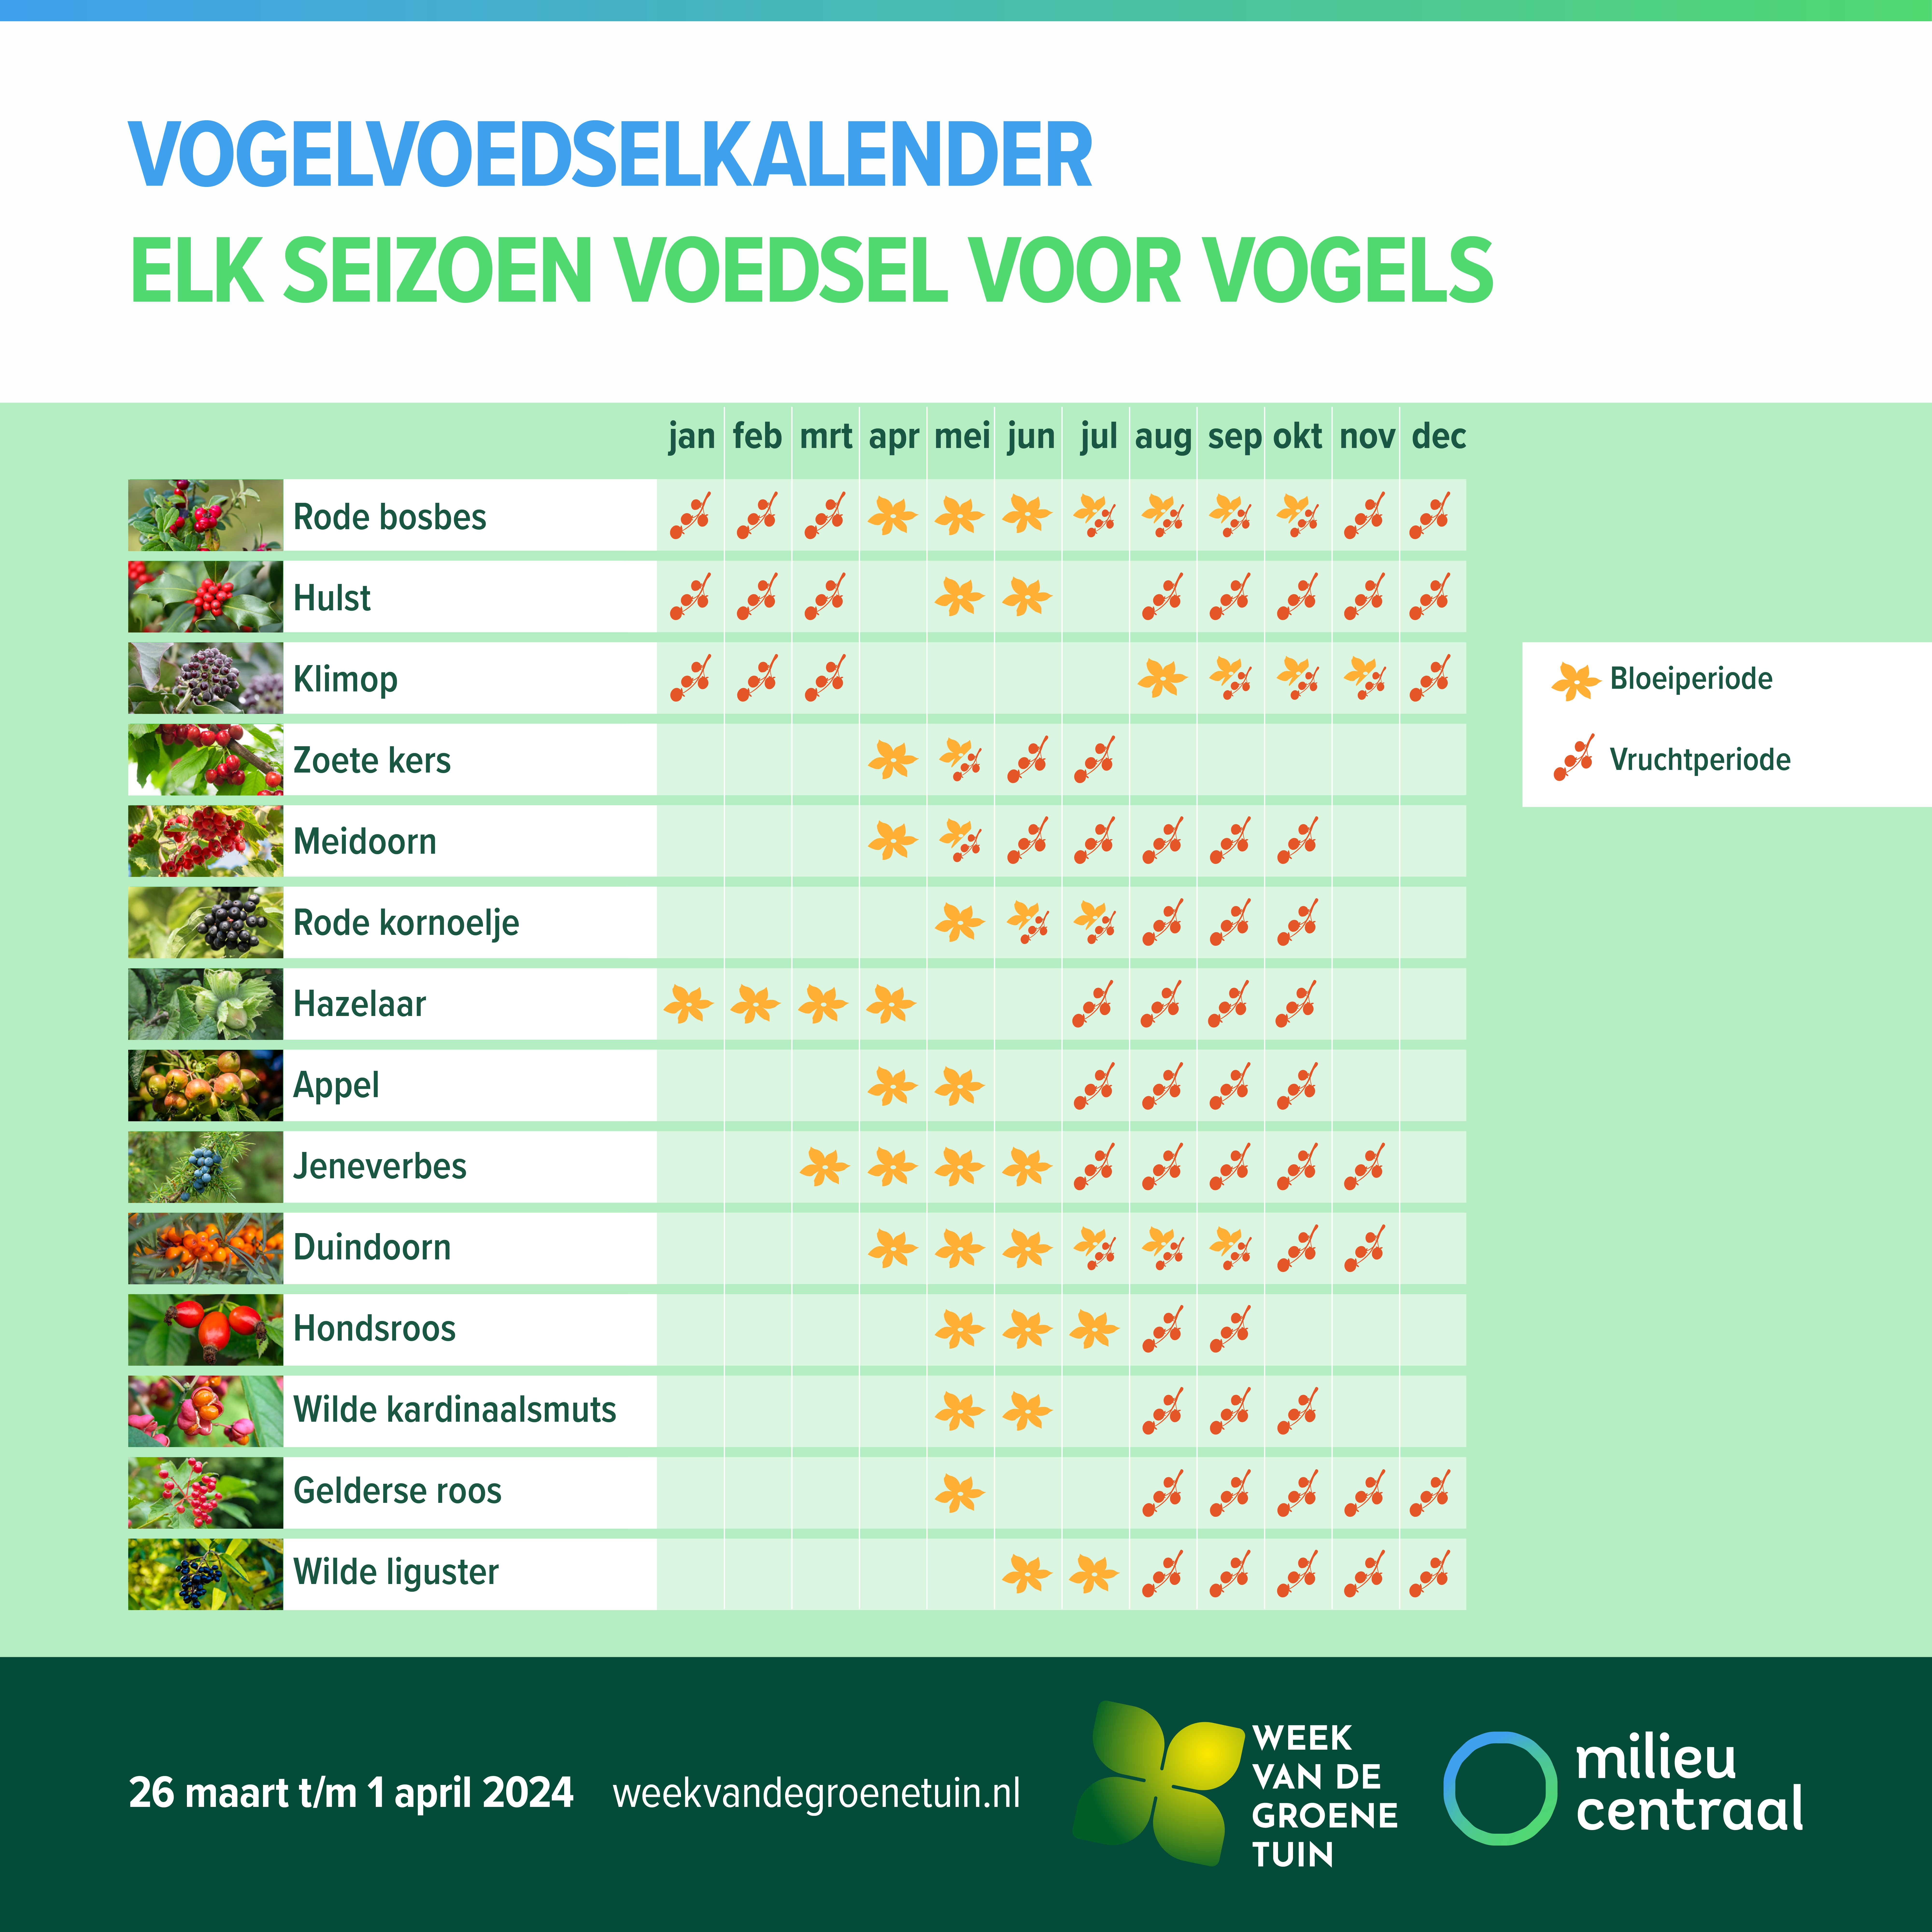 Vogelvoedselkalender Milieu Centraal